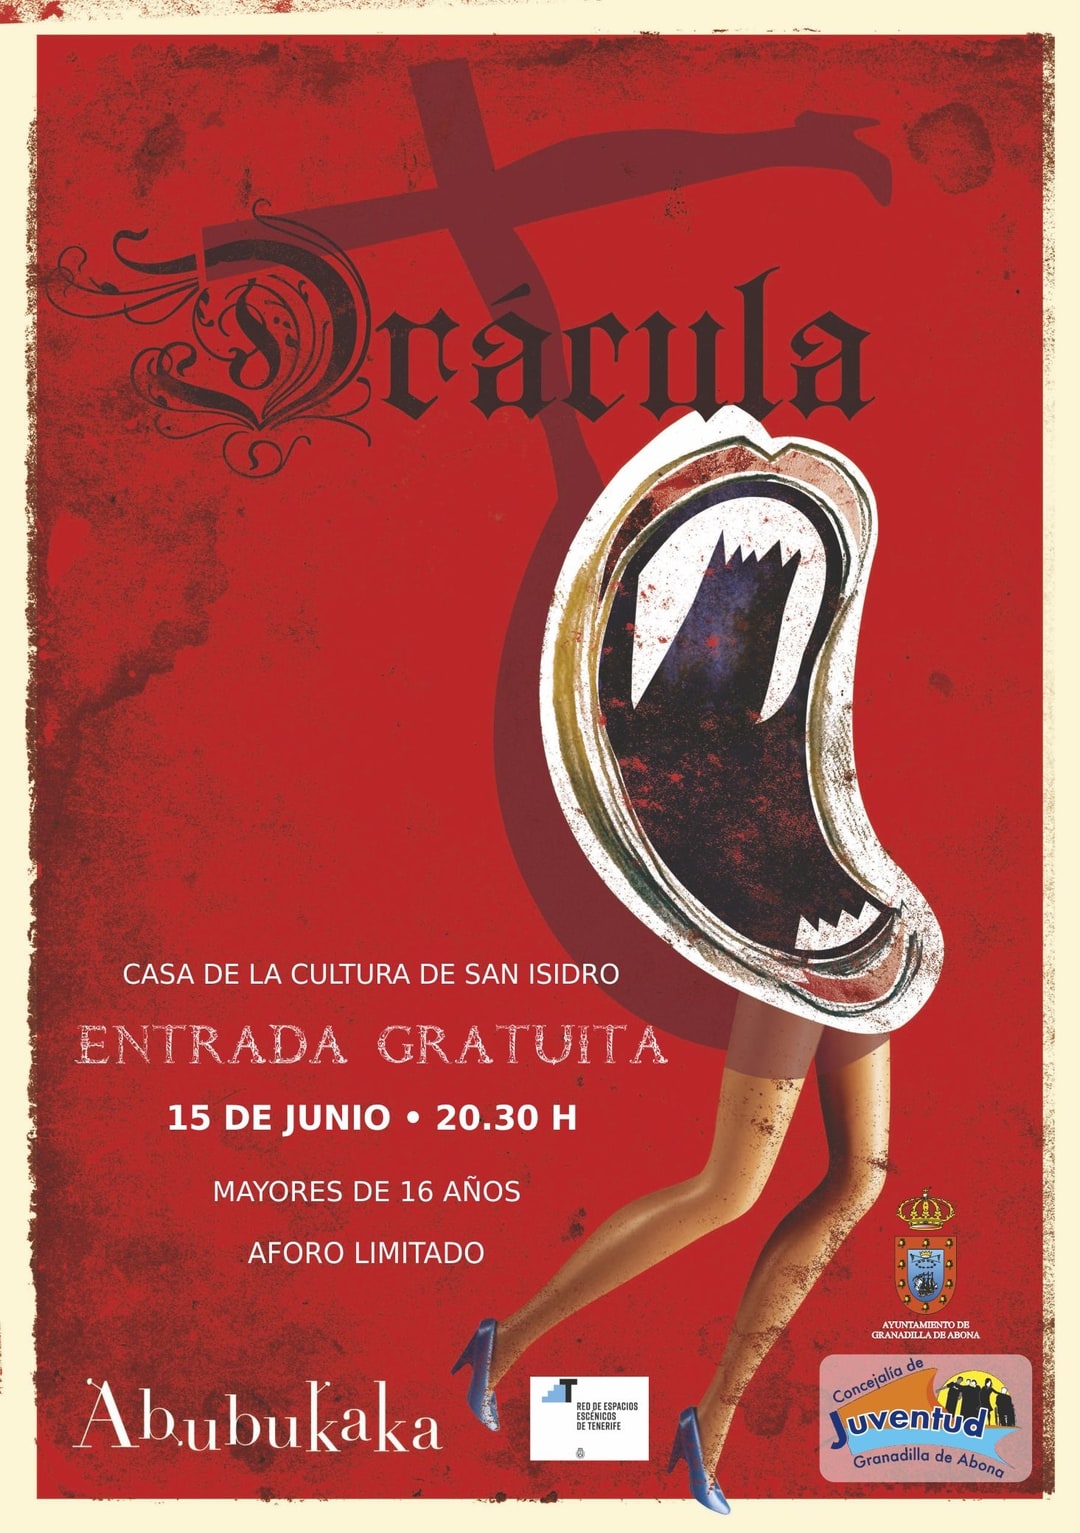 La obra de teatro ‘Drácula’, de Abubukaka, este viernes en la Casa de la Cultura de San Isidro